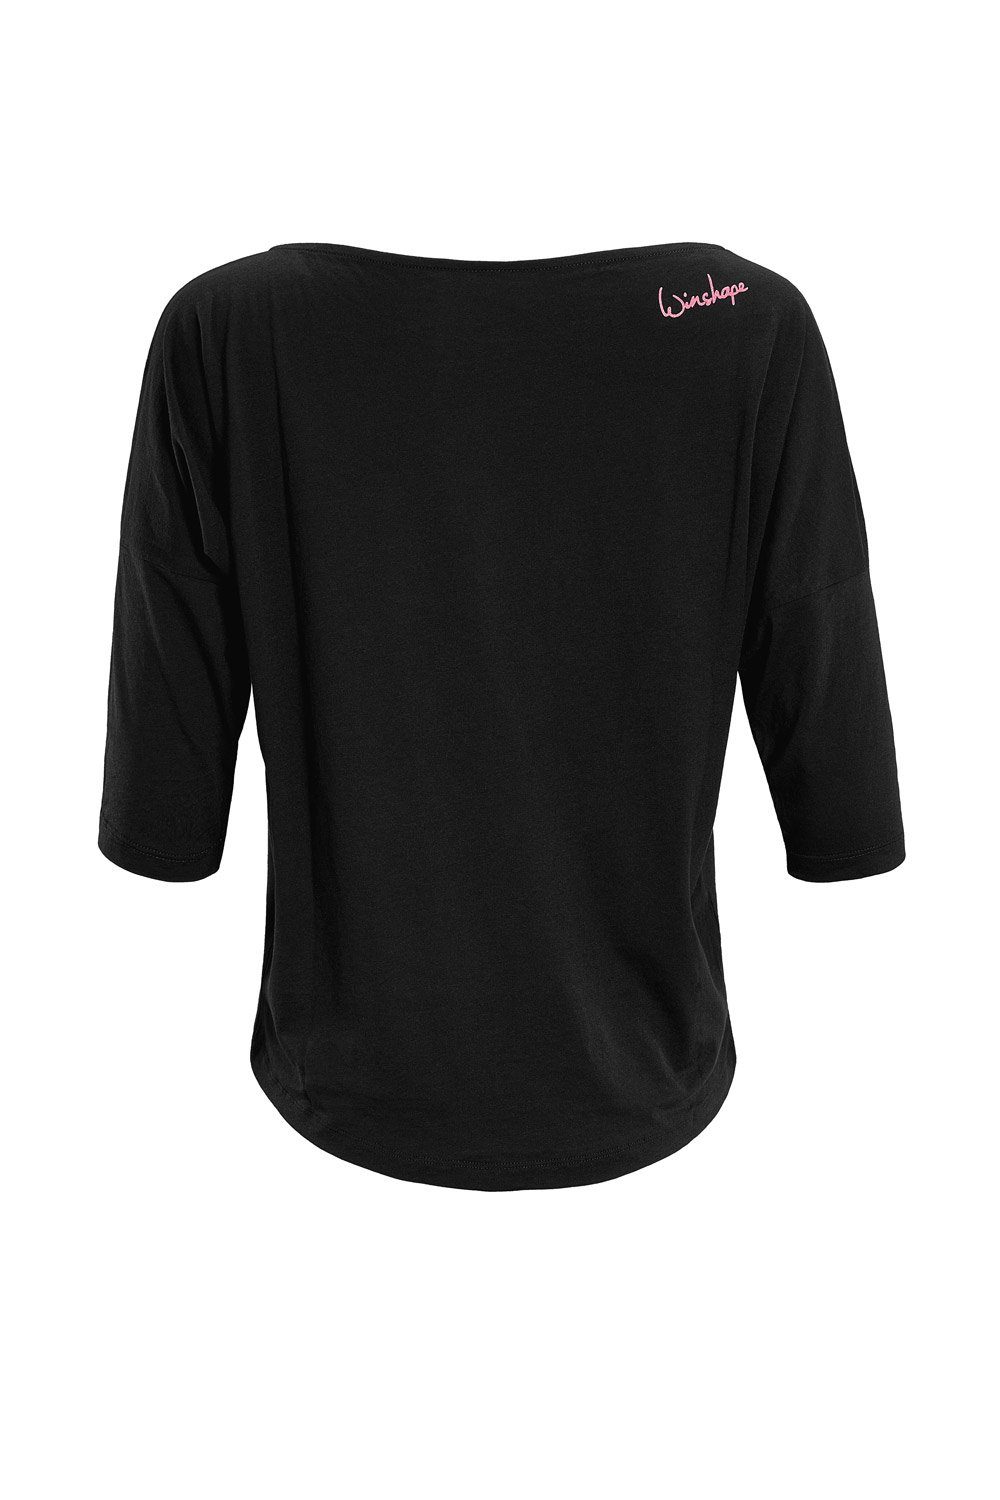 Neon MCS001 Glitzer-Aufdruck Winshape mit pinkem 3/4-Arm-Shirt ultra leicht